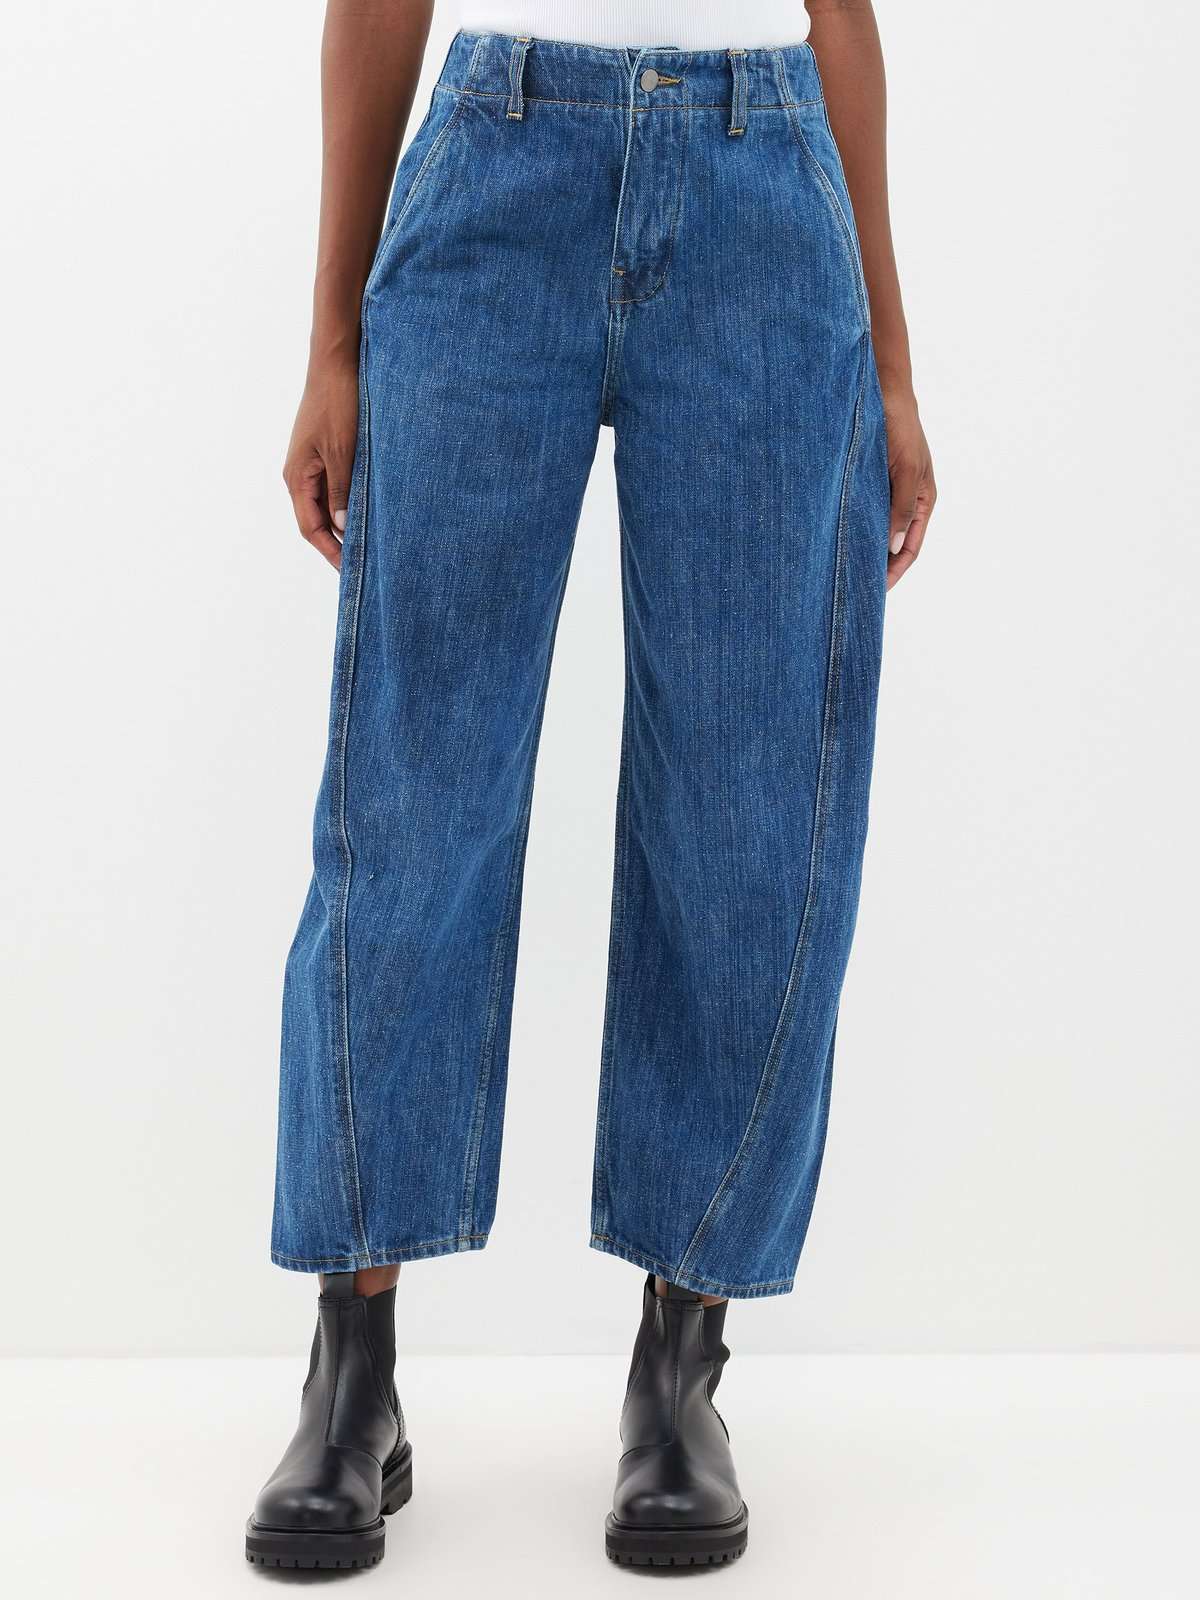 укороченные джинсы Akerman с объемными штанинами